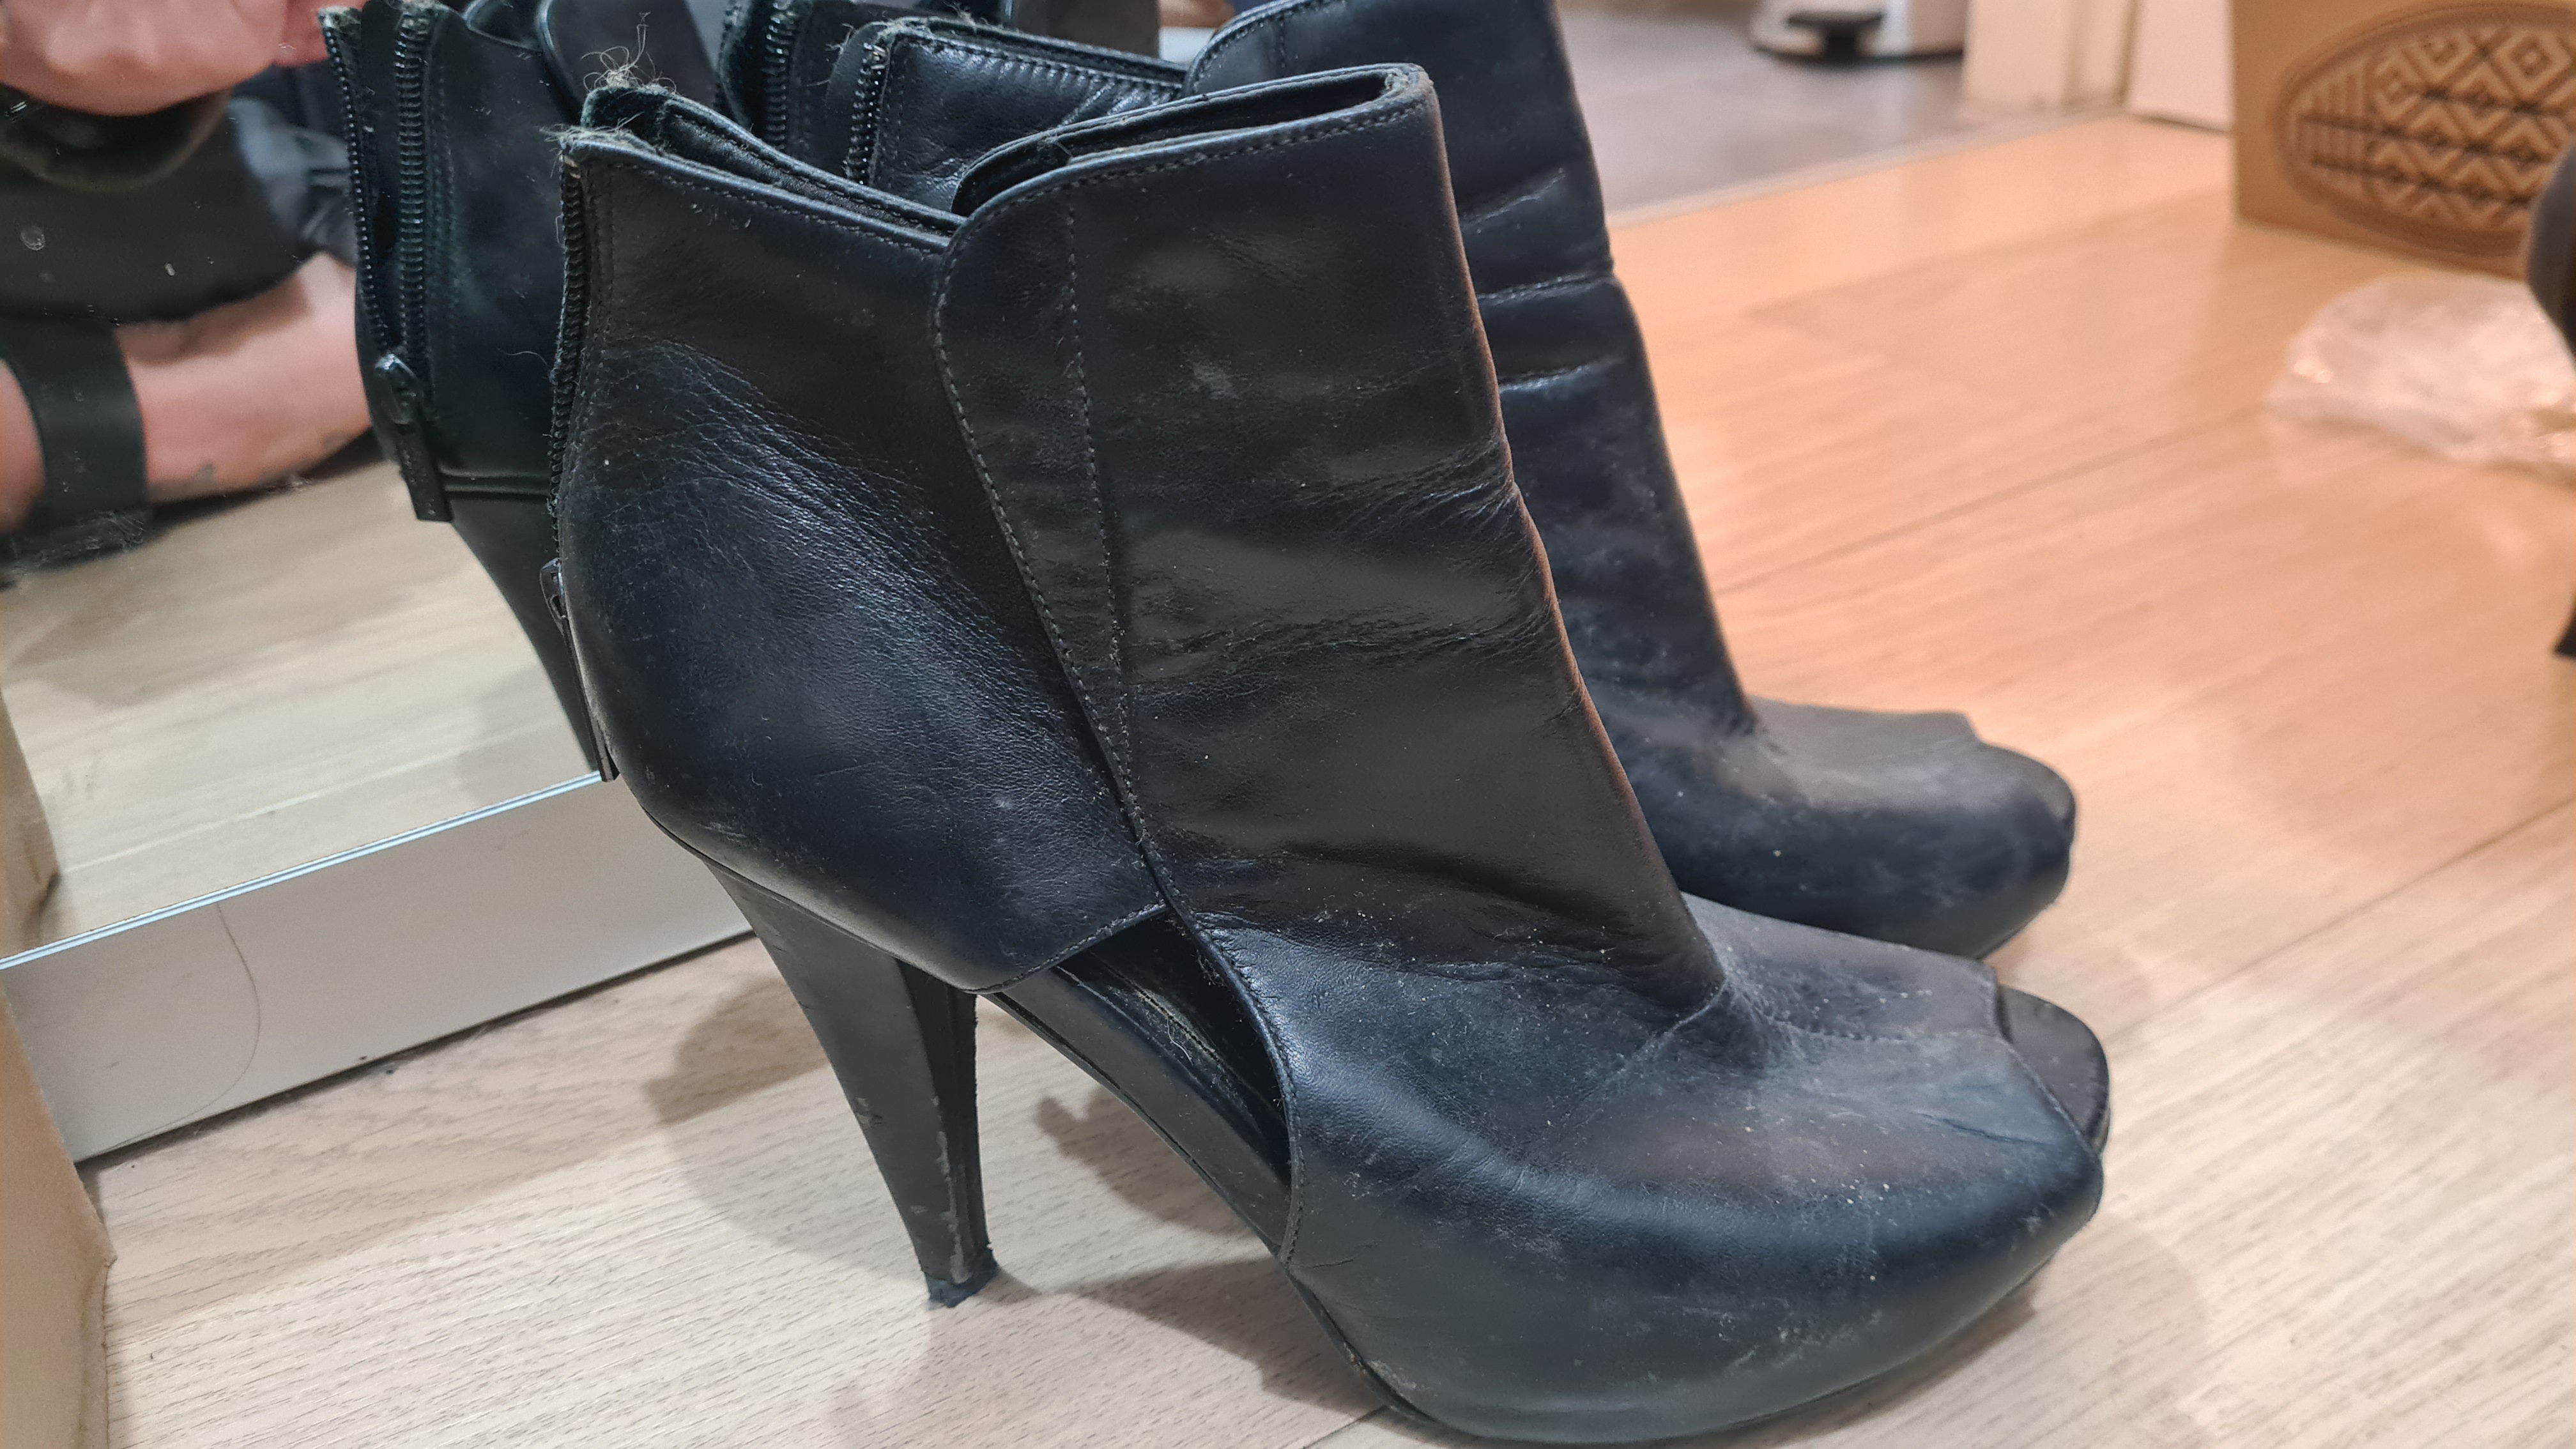 תמונה 4 ,נעליים למכירה בתל אביב יד-שניה לנשים  שונות